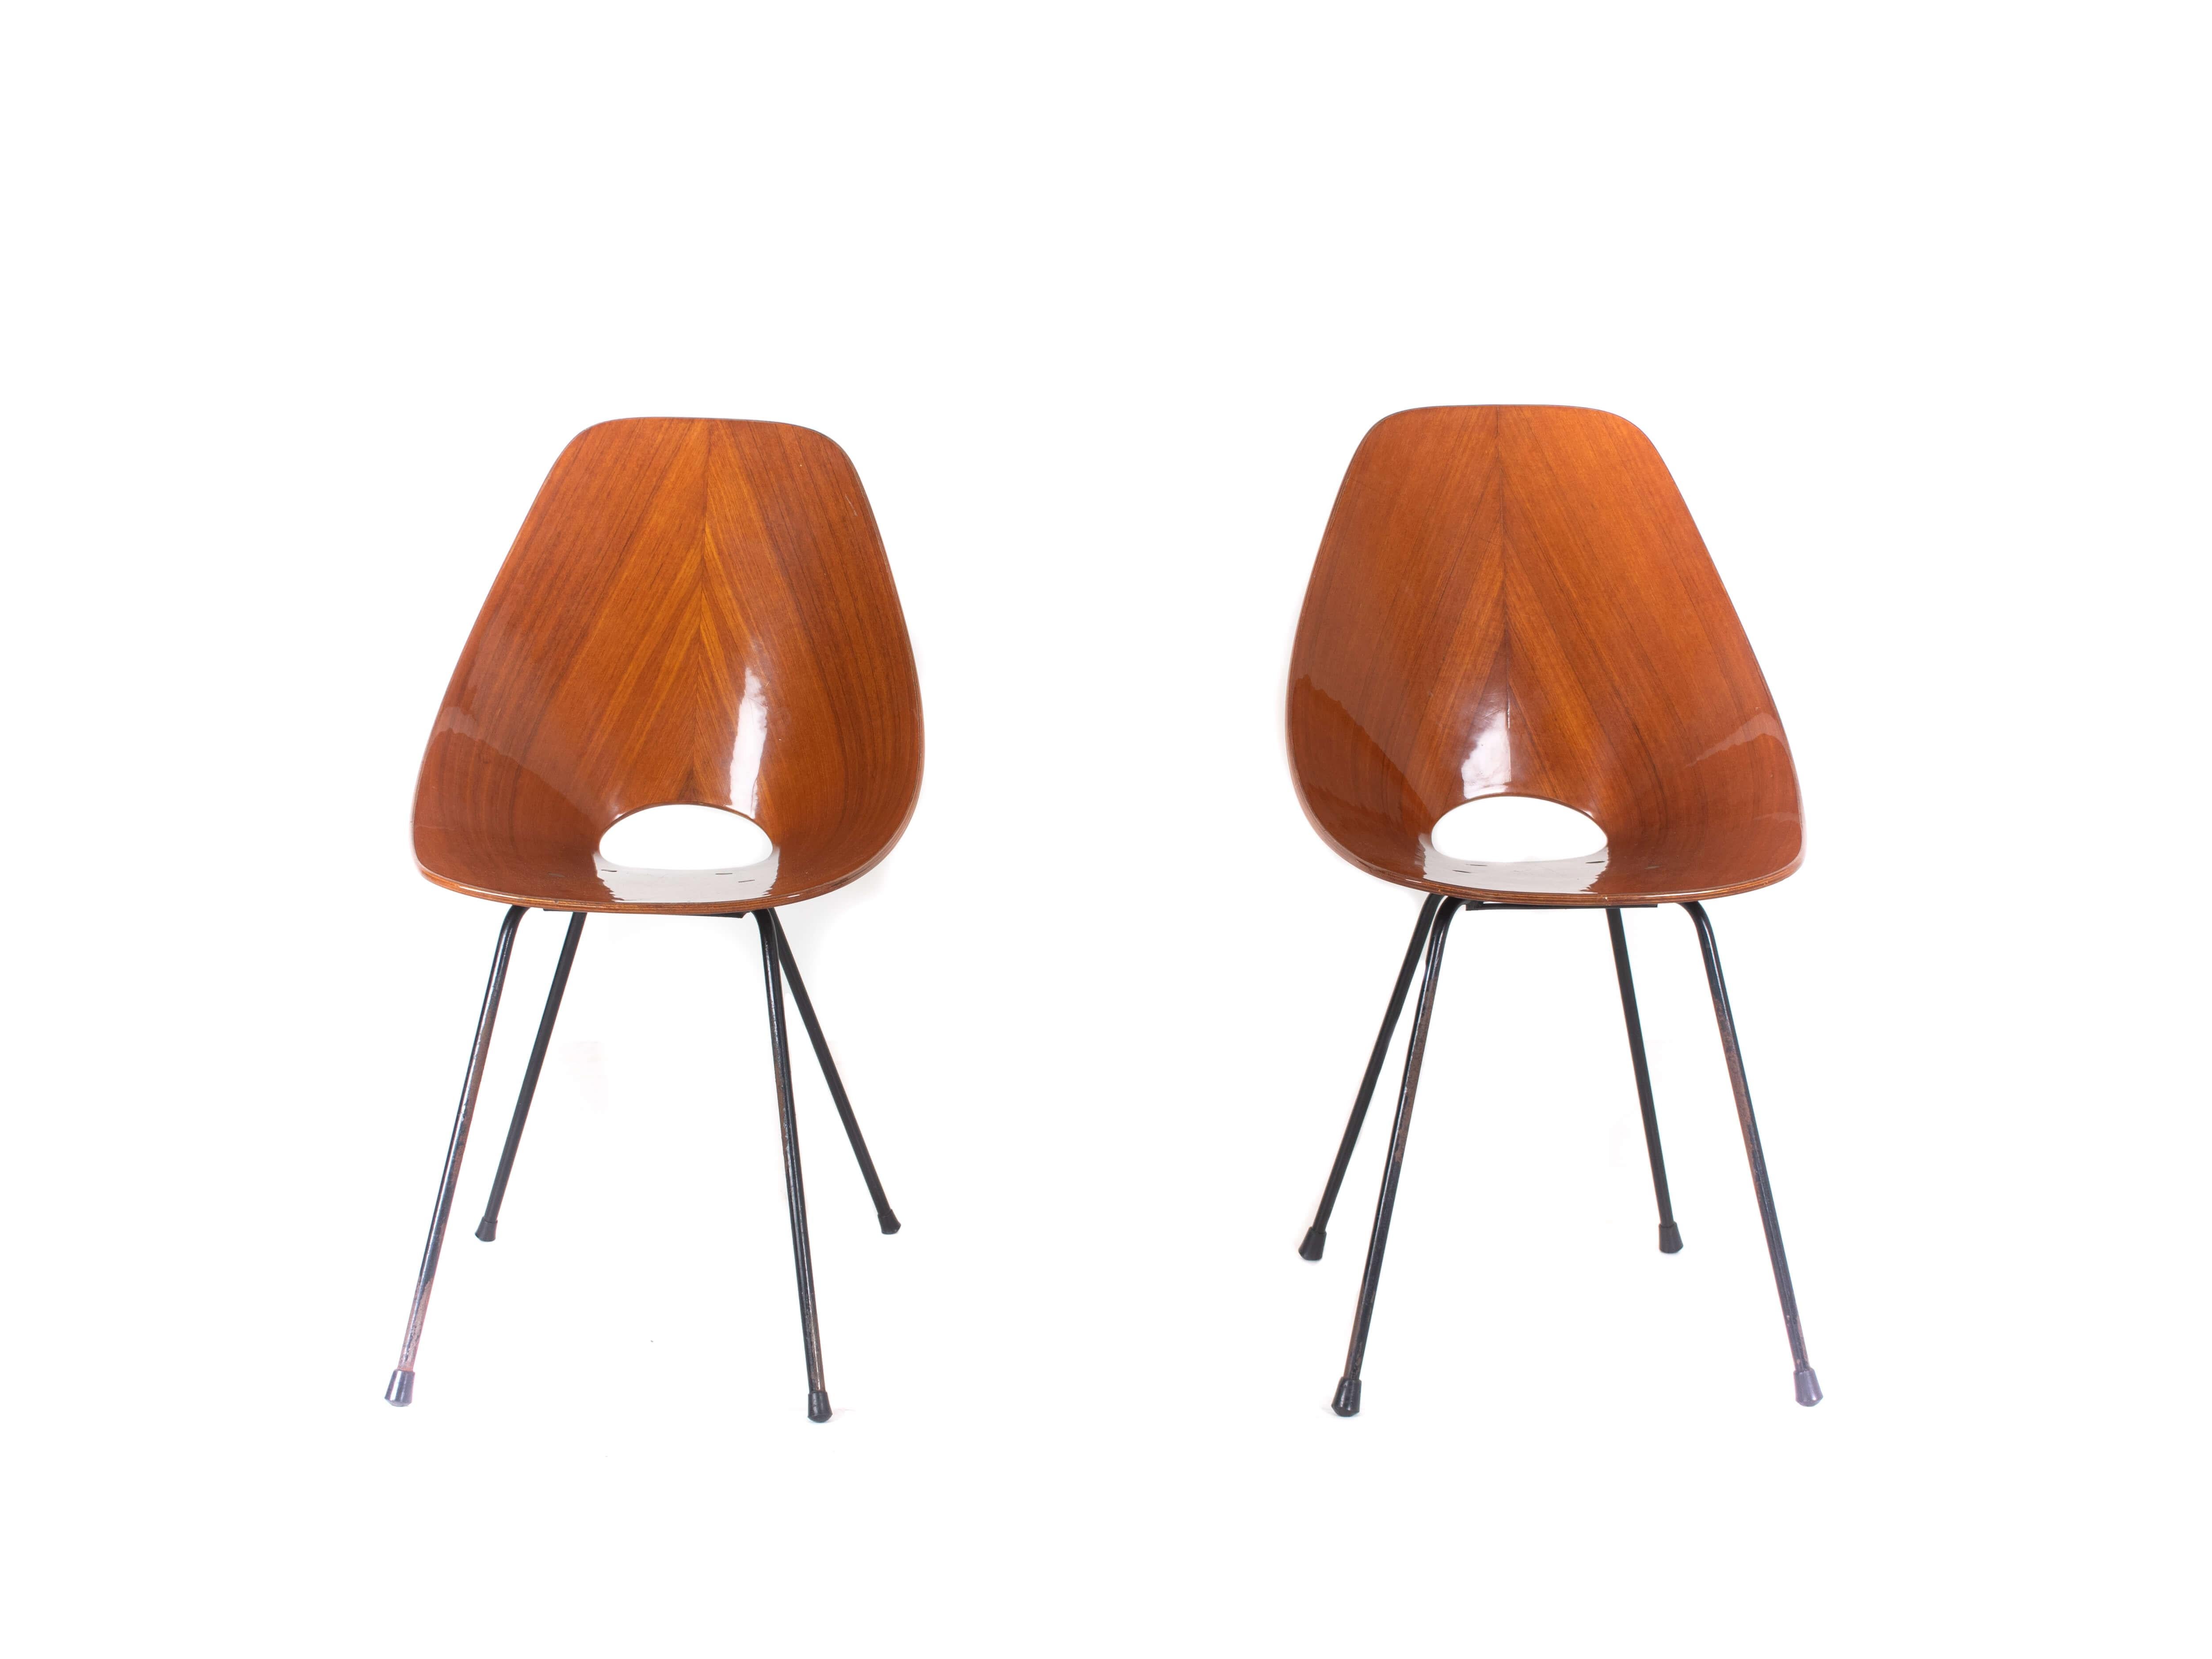 Ensemble de deux chaises Medea par Vittorio Nobilis pour Fratelli Tagliabue, Italie, années 1950. Ces chaises modernes italiennes emblématiques ont un design exceptionnel. Des barres de fer émaillées constituent le cadre de cette chaise. Les sièges